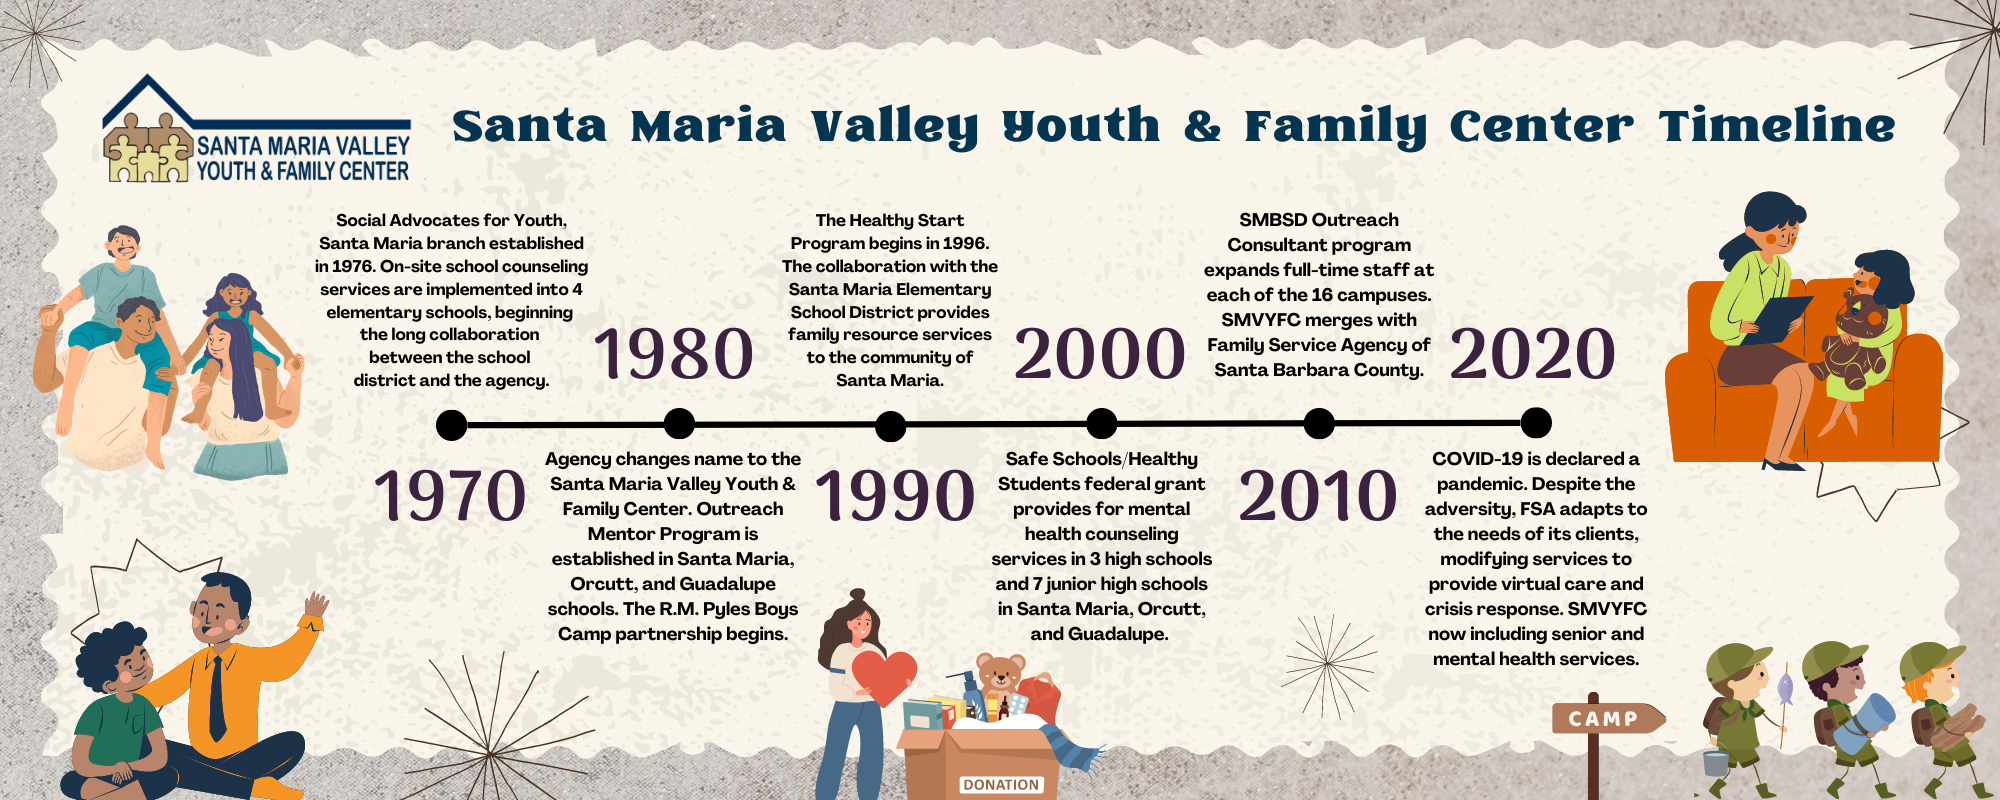 Santa Maria valley Youth & Family Center 50th Anniversary